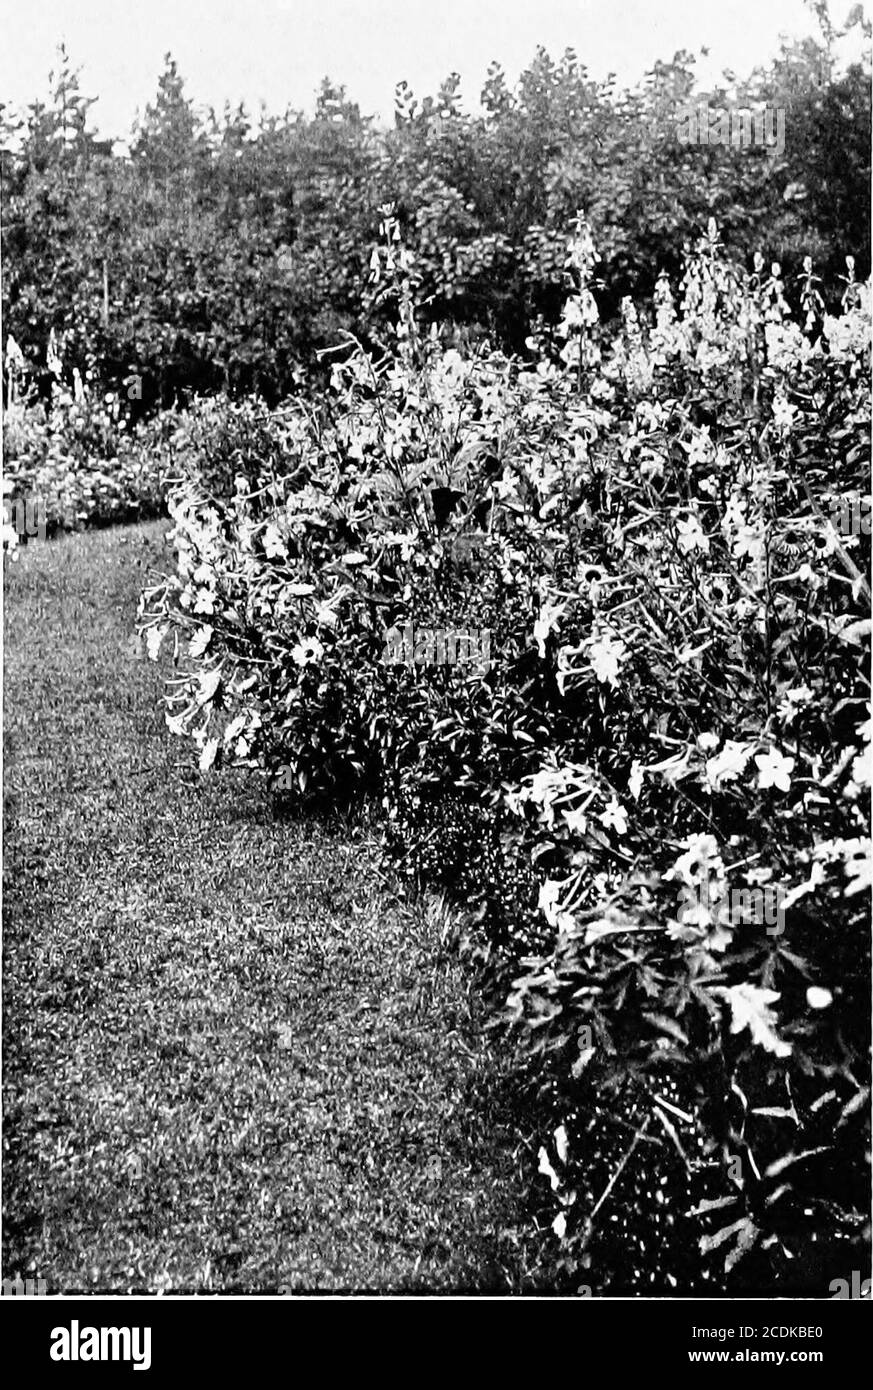 . Der glückliche Garten. Die Grenze entlang der Wand, wo es über die Steine des Hockergartens fällt. Canterbury Glocken sind in den großen Grenzen, aber Larkspurs sind unter den anderen einjährigen erlaubt. Jeder Aspekt hat seine eigene Individualität. Am Ende des Obstgartens enden die Grenzen in lavenderhecken. Säulenrosen – Rubens, Euphrosyne, Leuch-Stern und eine weiße einzelne Rose – markieren sie vom Rasen, und führen sie in ihn ein, wo sich in etwas Abstand ein großer Busch befindet – vier oder fünf Meter hindurch – der einzigen weißen Polyanthus-Rose, der geliebten Miss Jekyll, deren Bücher ein notwendiger Bestandteil jeder Gärtnerentwurfe sind Stockfoto